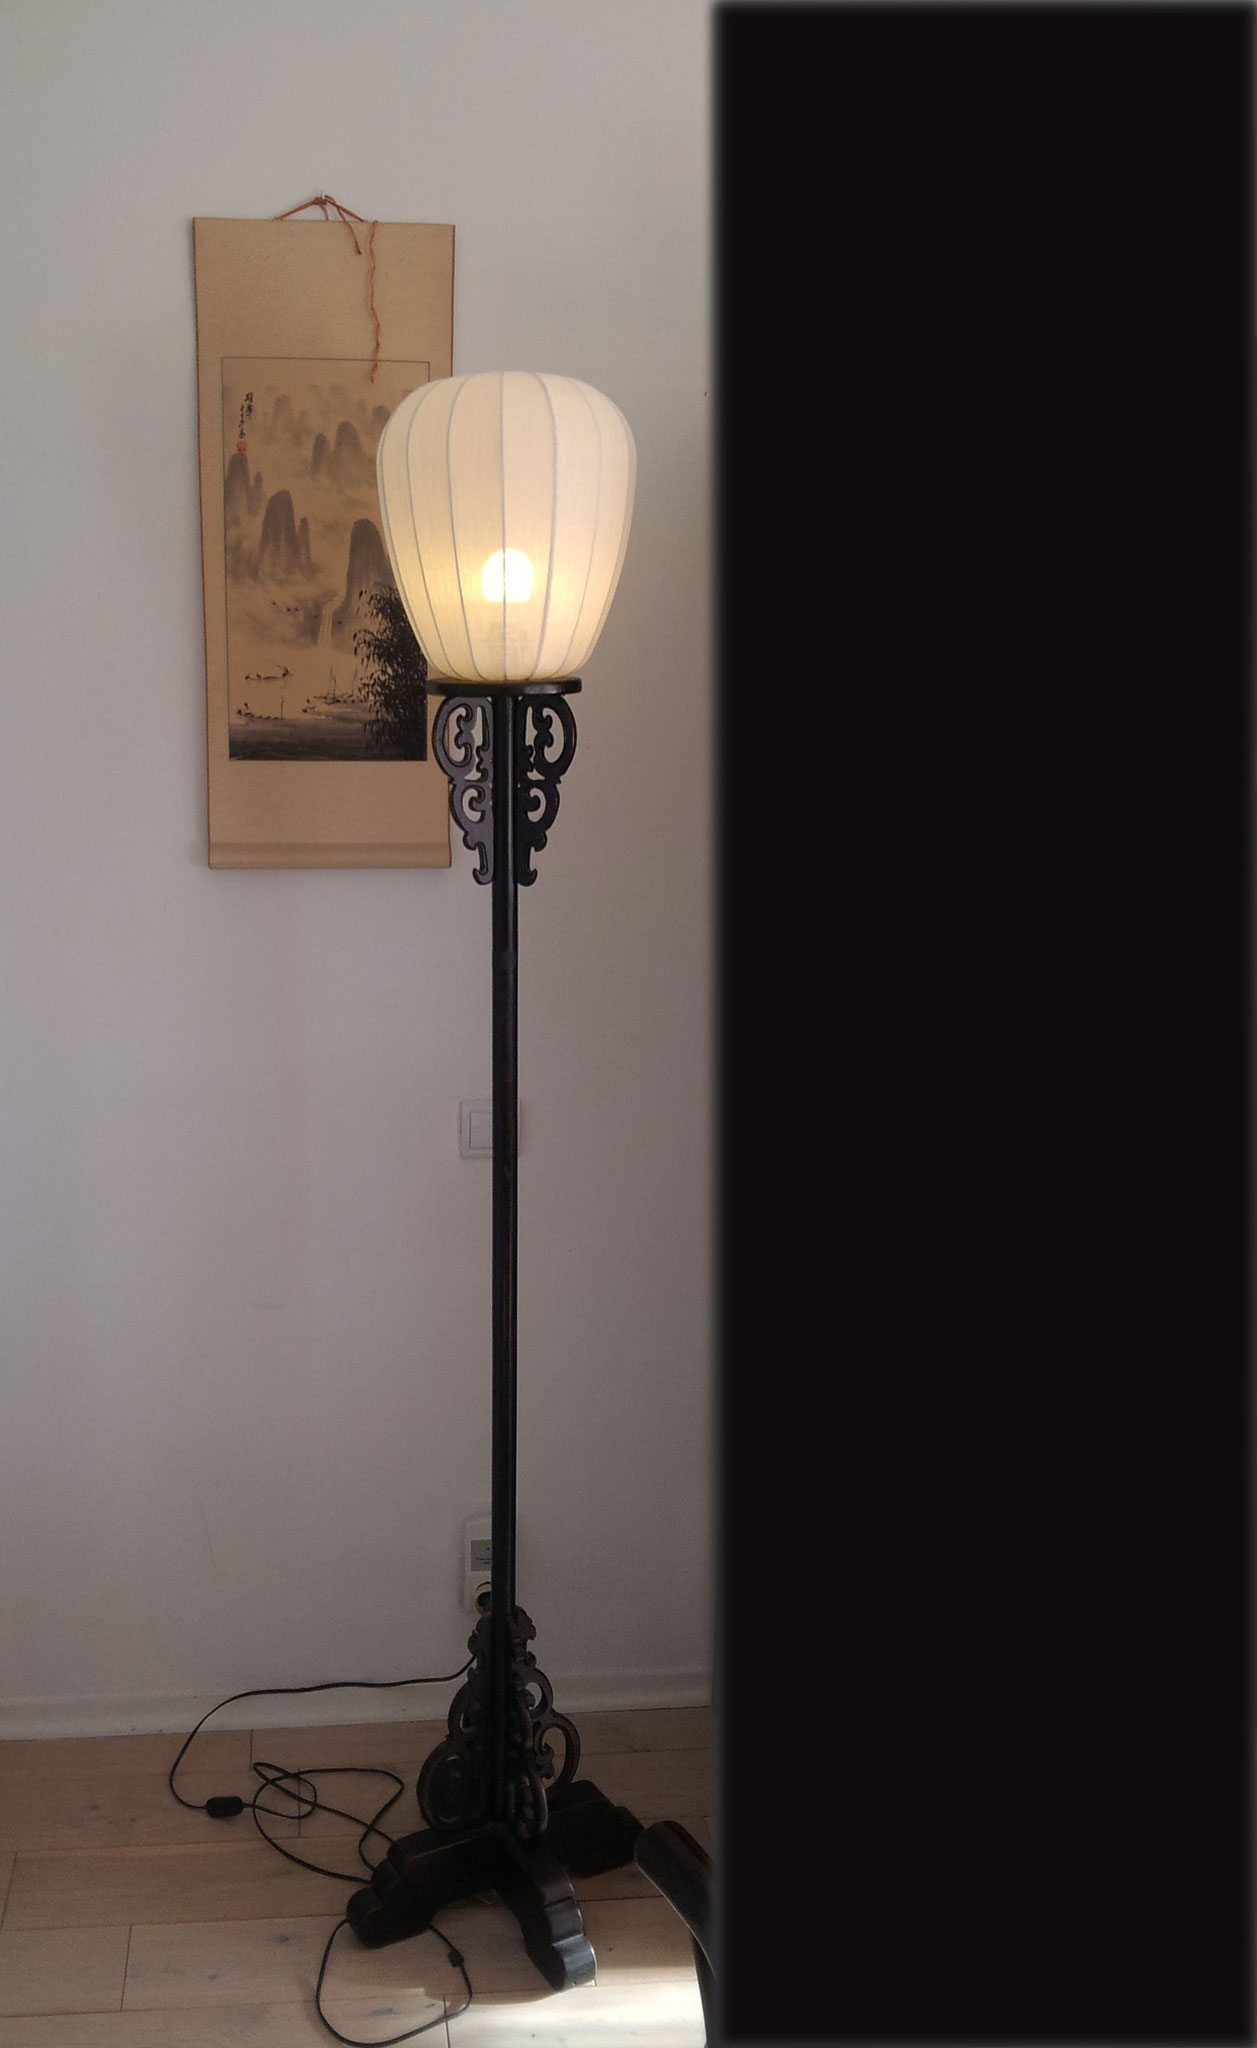 Rénovation à l'identique : lanterne chinoise en voilage